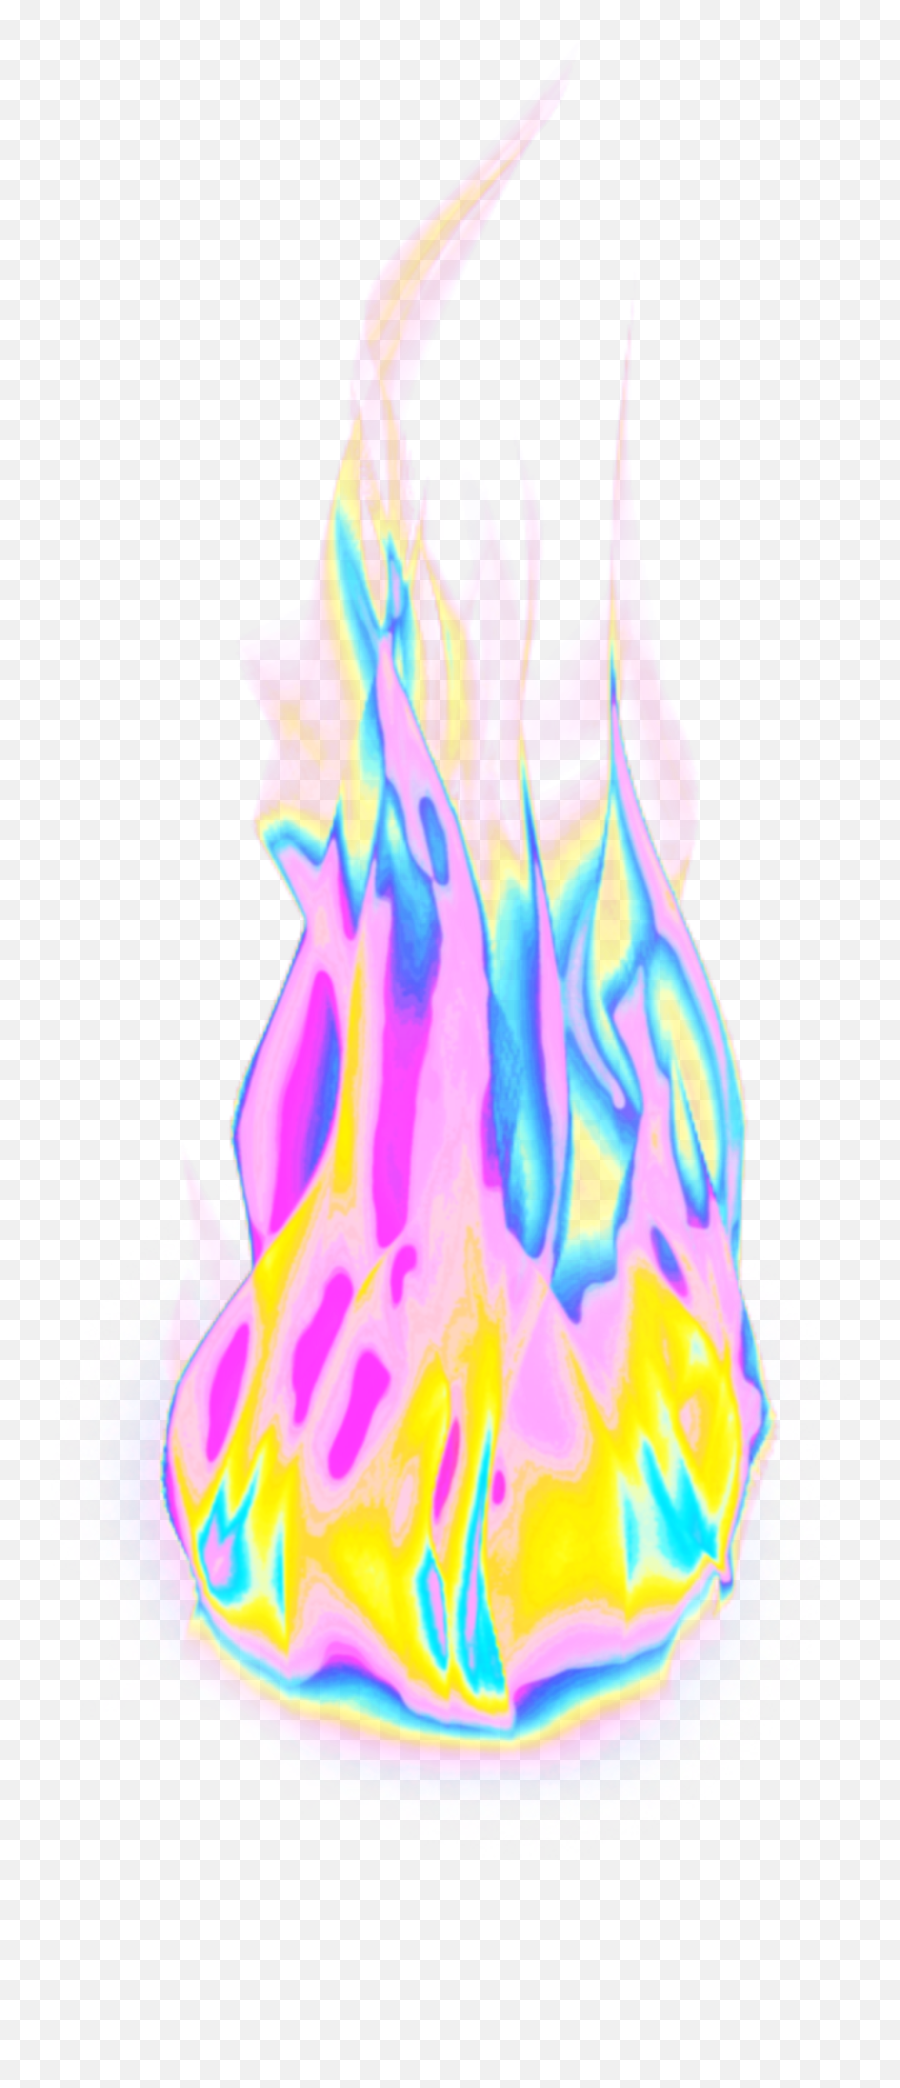 Fire Flames Aesthetic Color Sticker By Dinaaaaaah Emoji,Flame Emoji Transparent